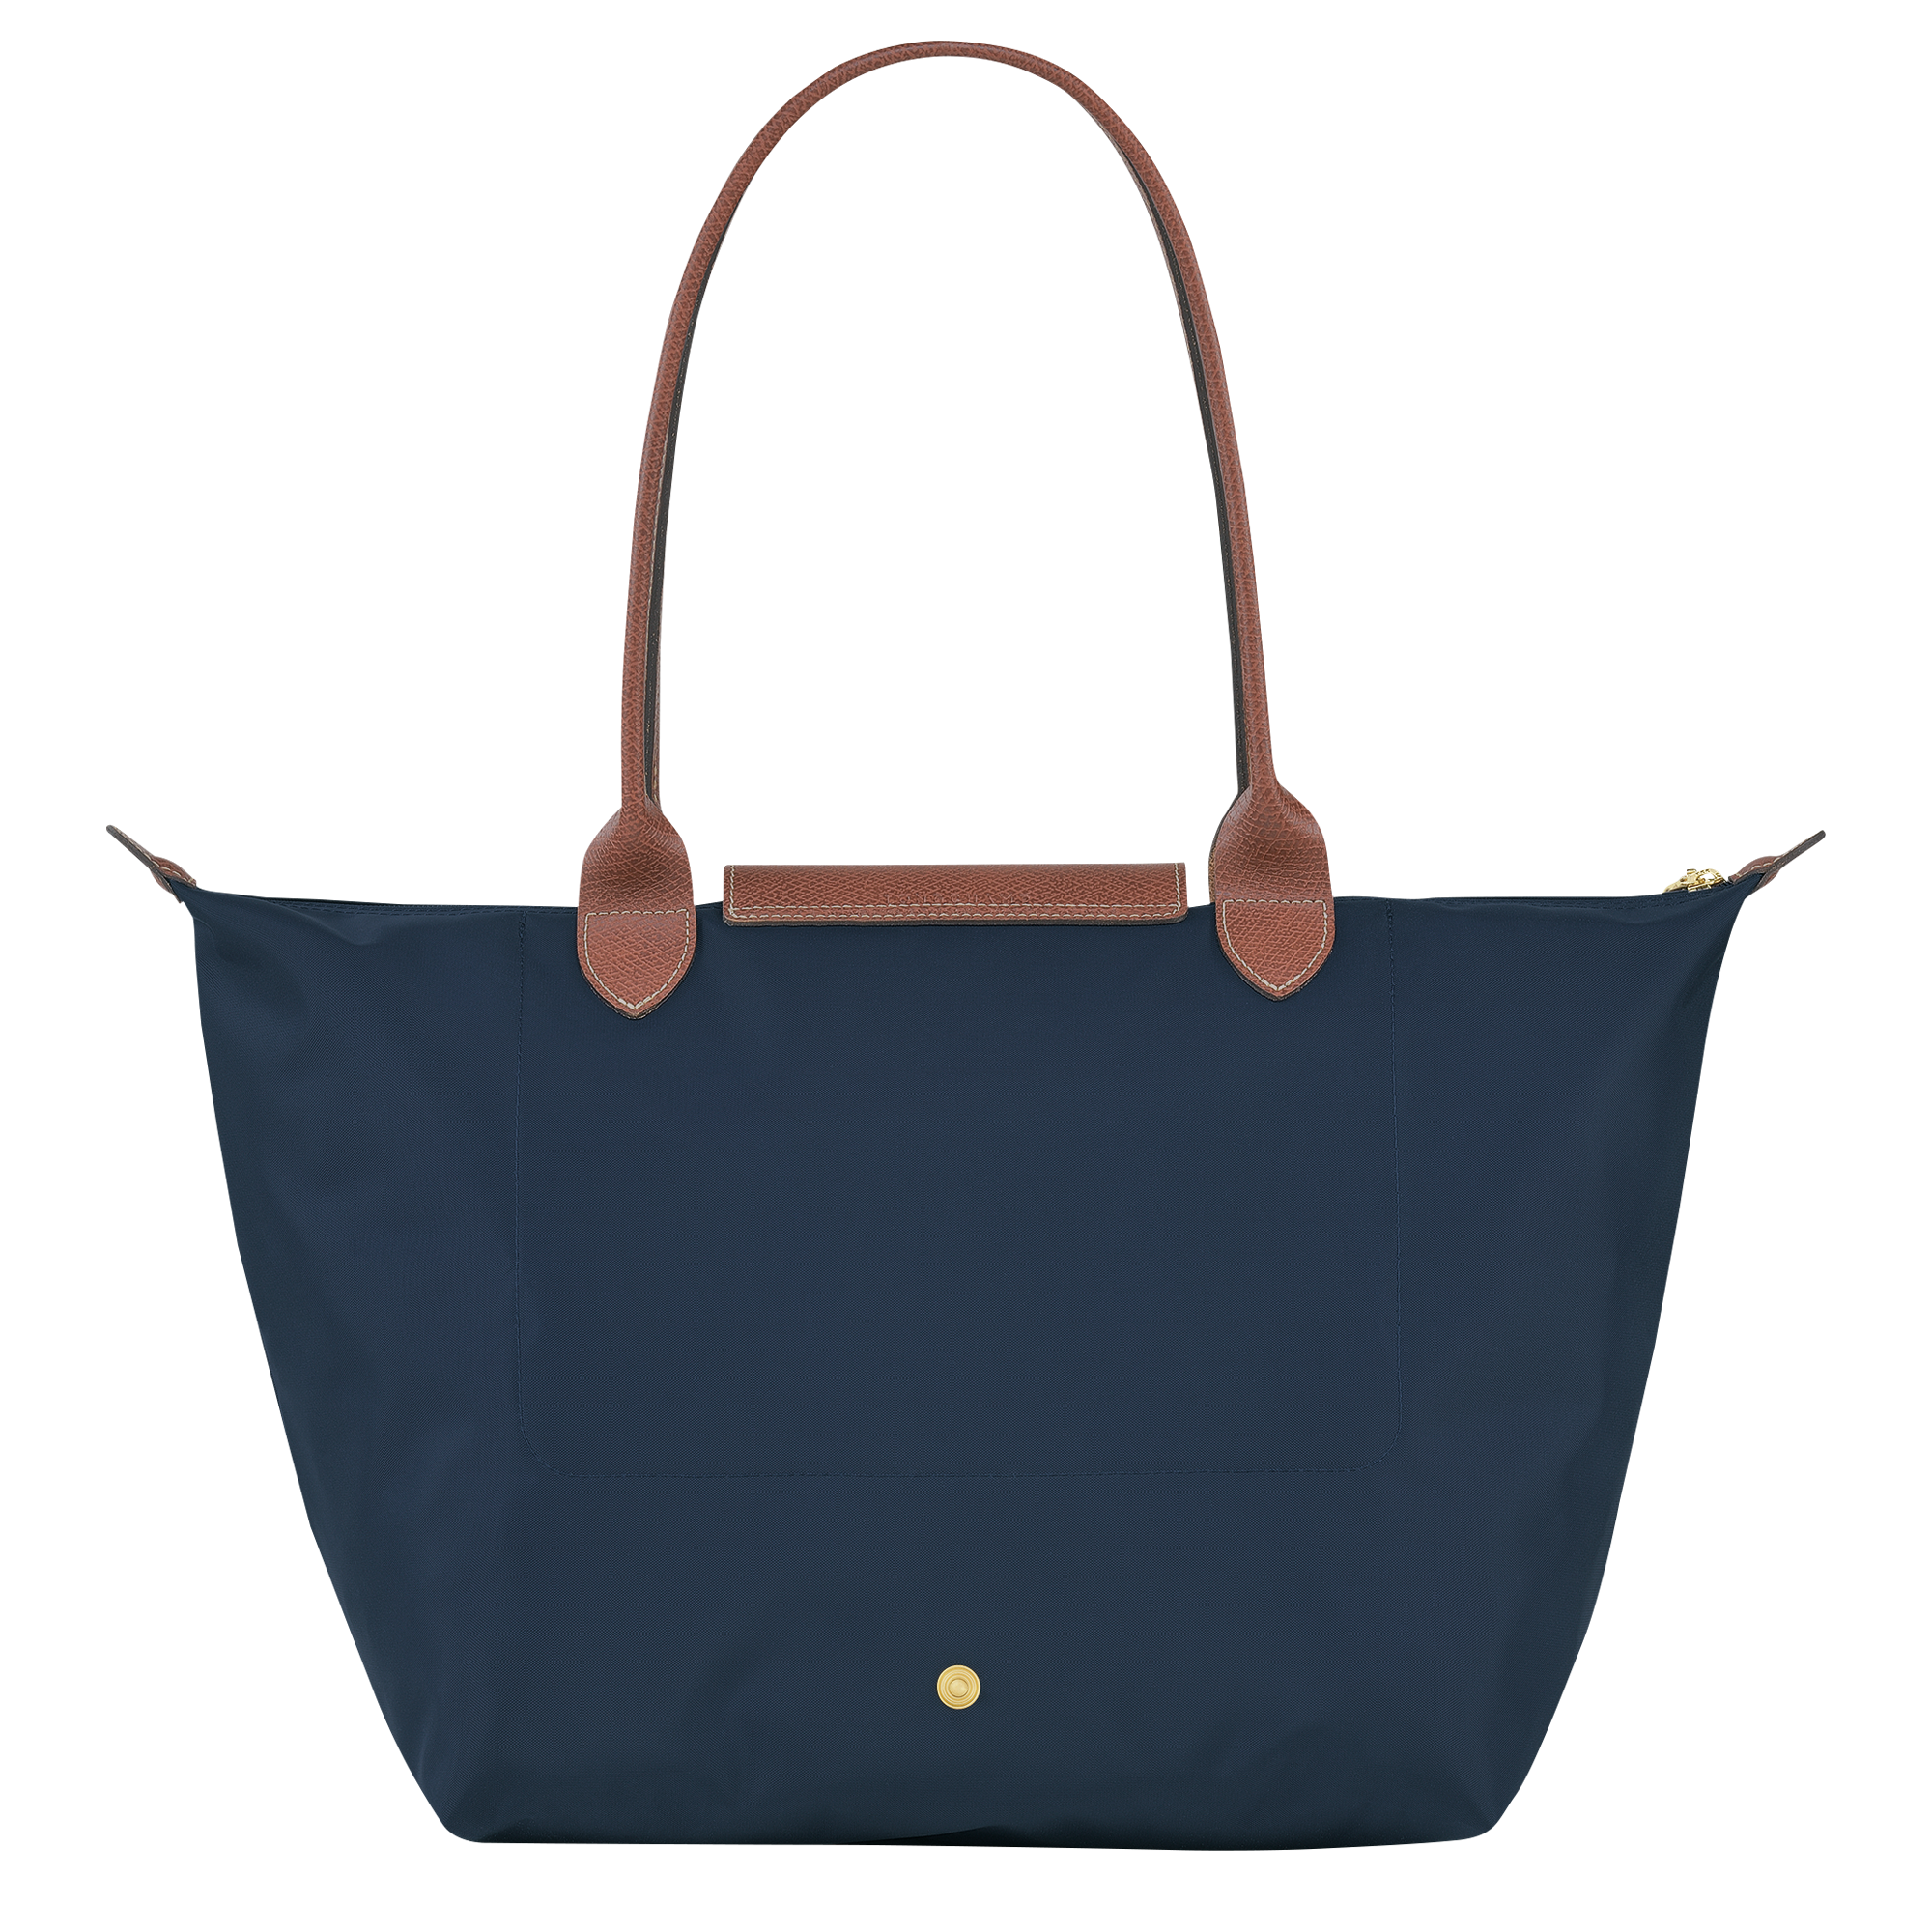 Longchamp Medium Le Pliage Original Luggage Bag - Farfetch